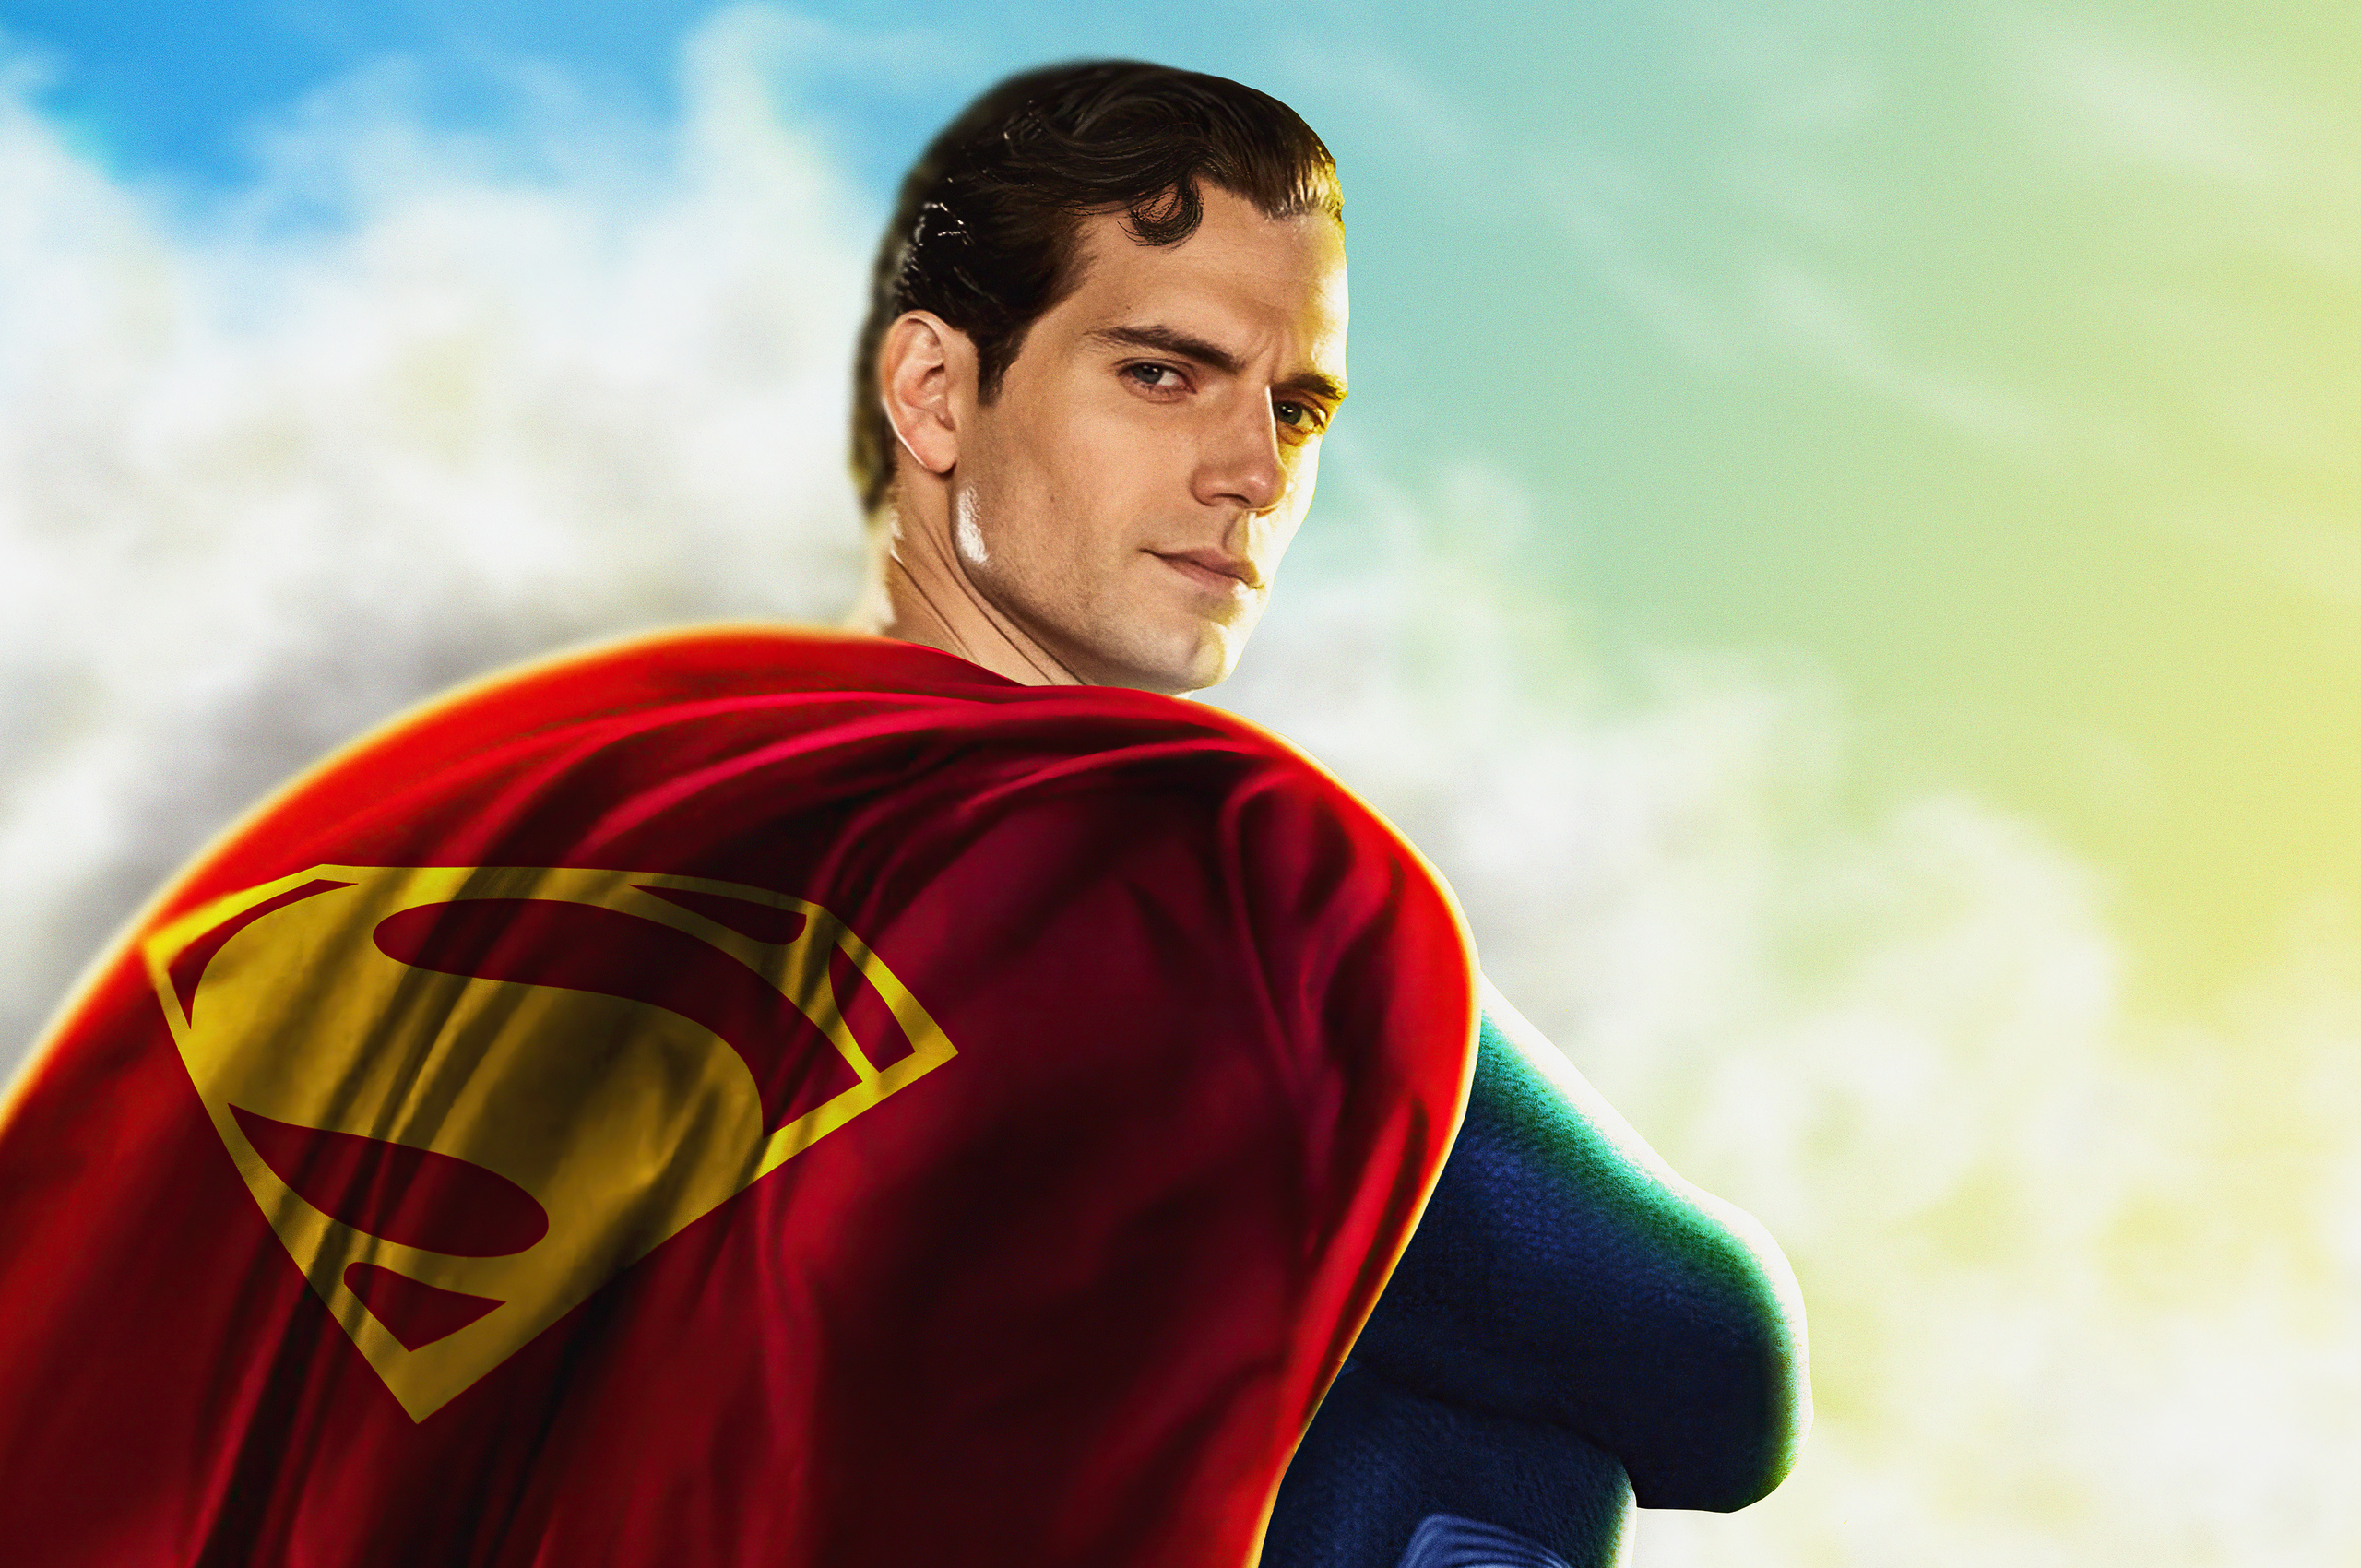 henry-cavill-superman-5k-qz.jpg